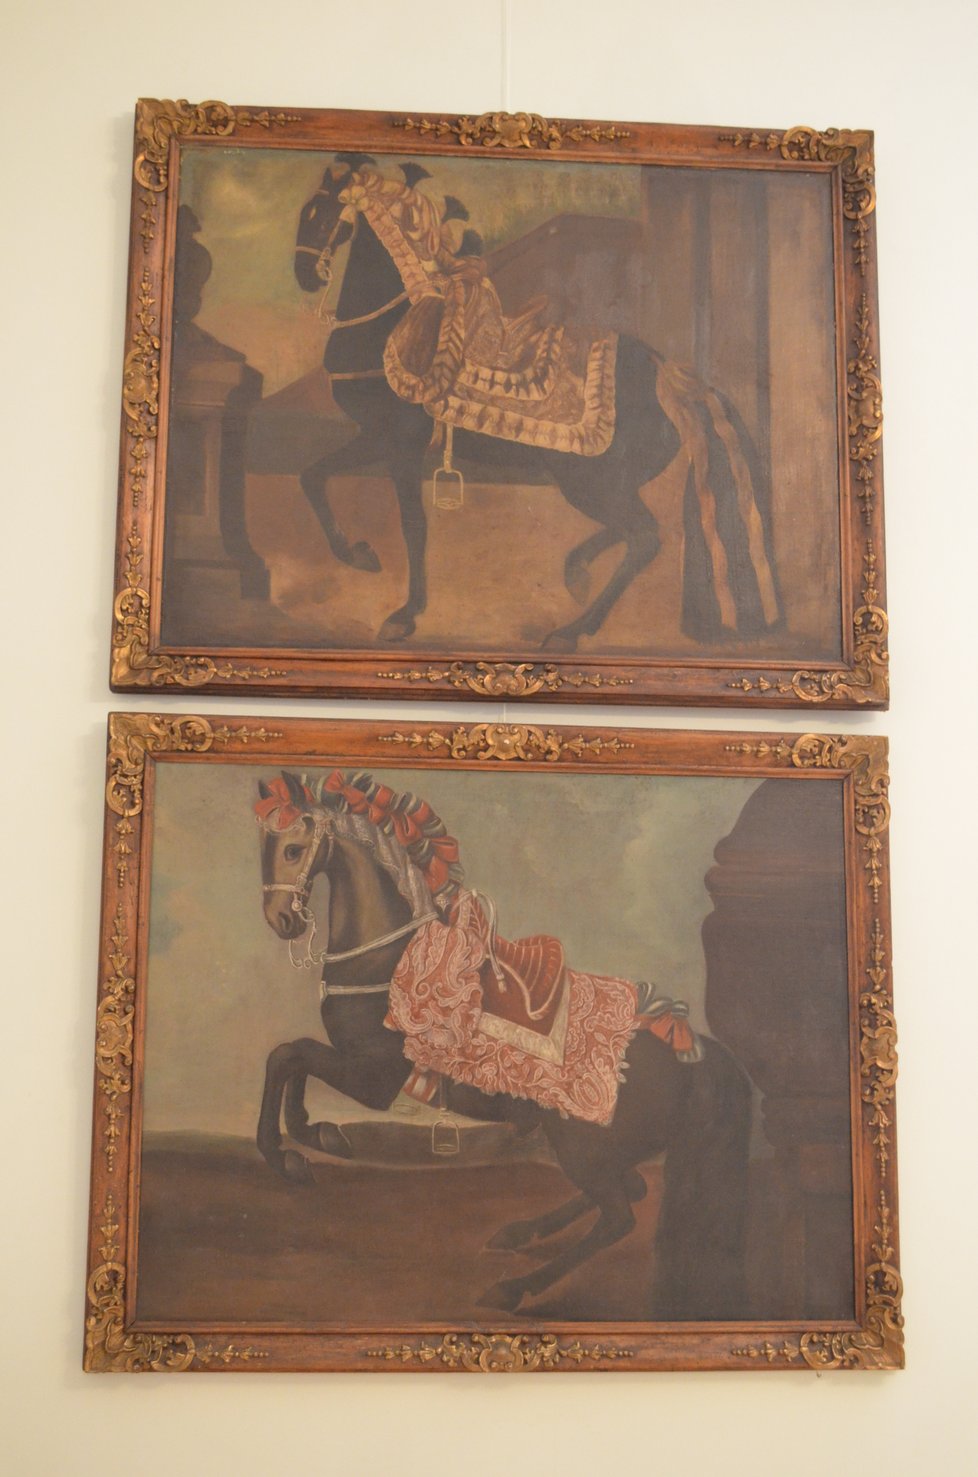 Pokoje šlechta dekorovala obrazy koní. Byl to tehdy módní prvek, ukazoval, že jsou znalí chovu.